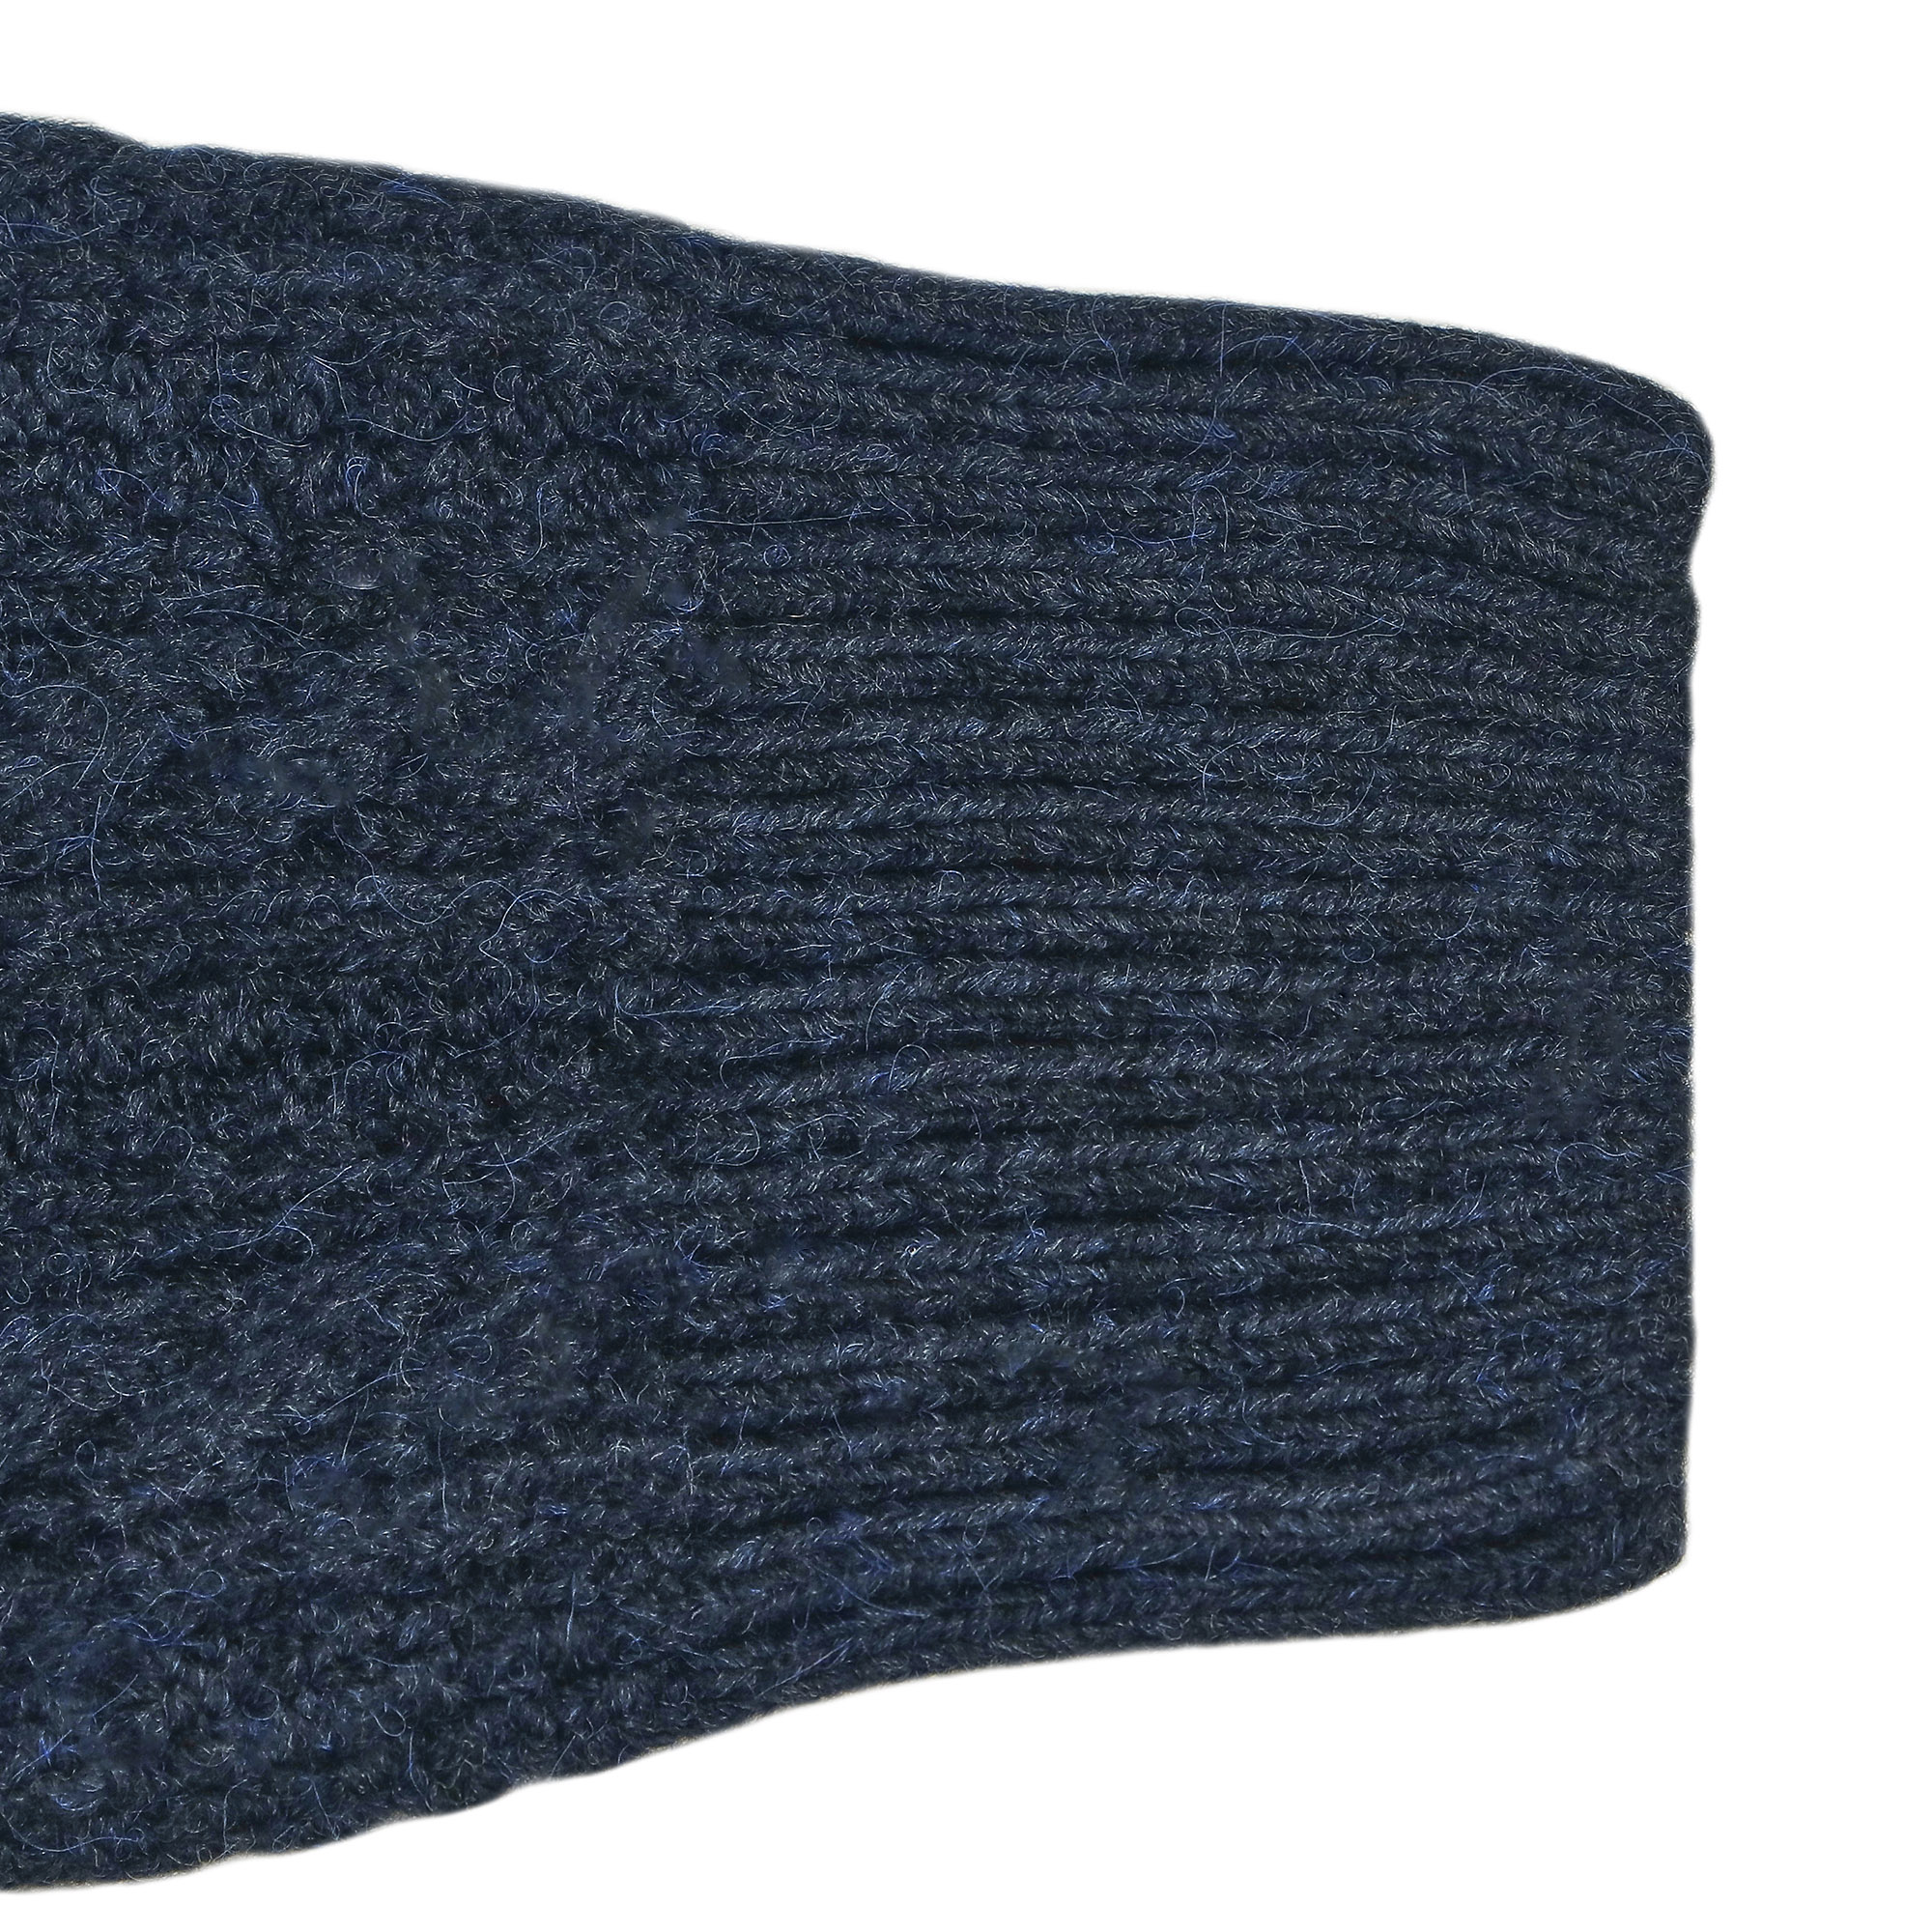 Мужской свитер Pulltonic Олень чёрный, цвет белый, размер L - фото 6